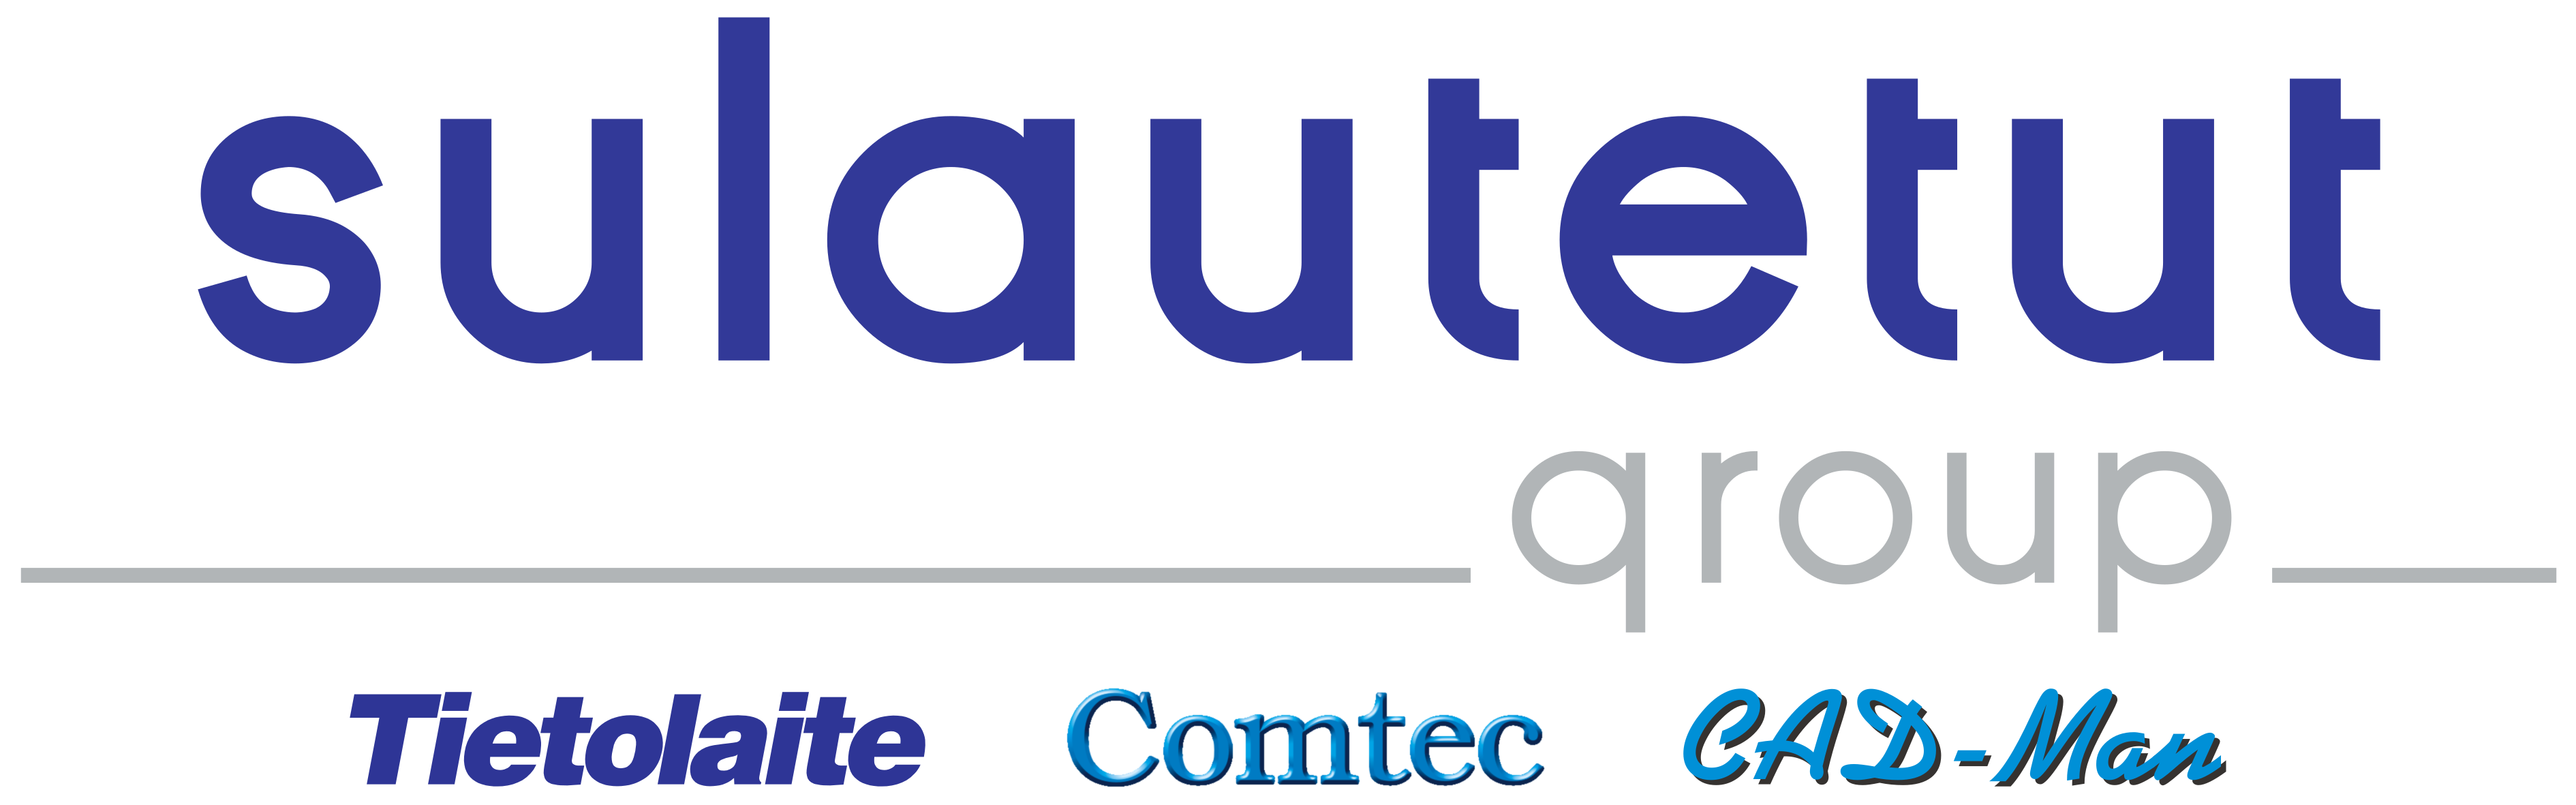 Sulautetut Group logo